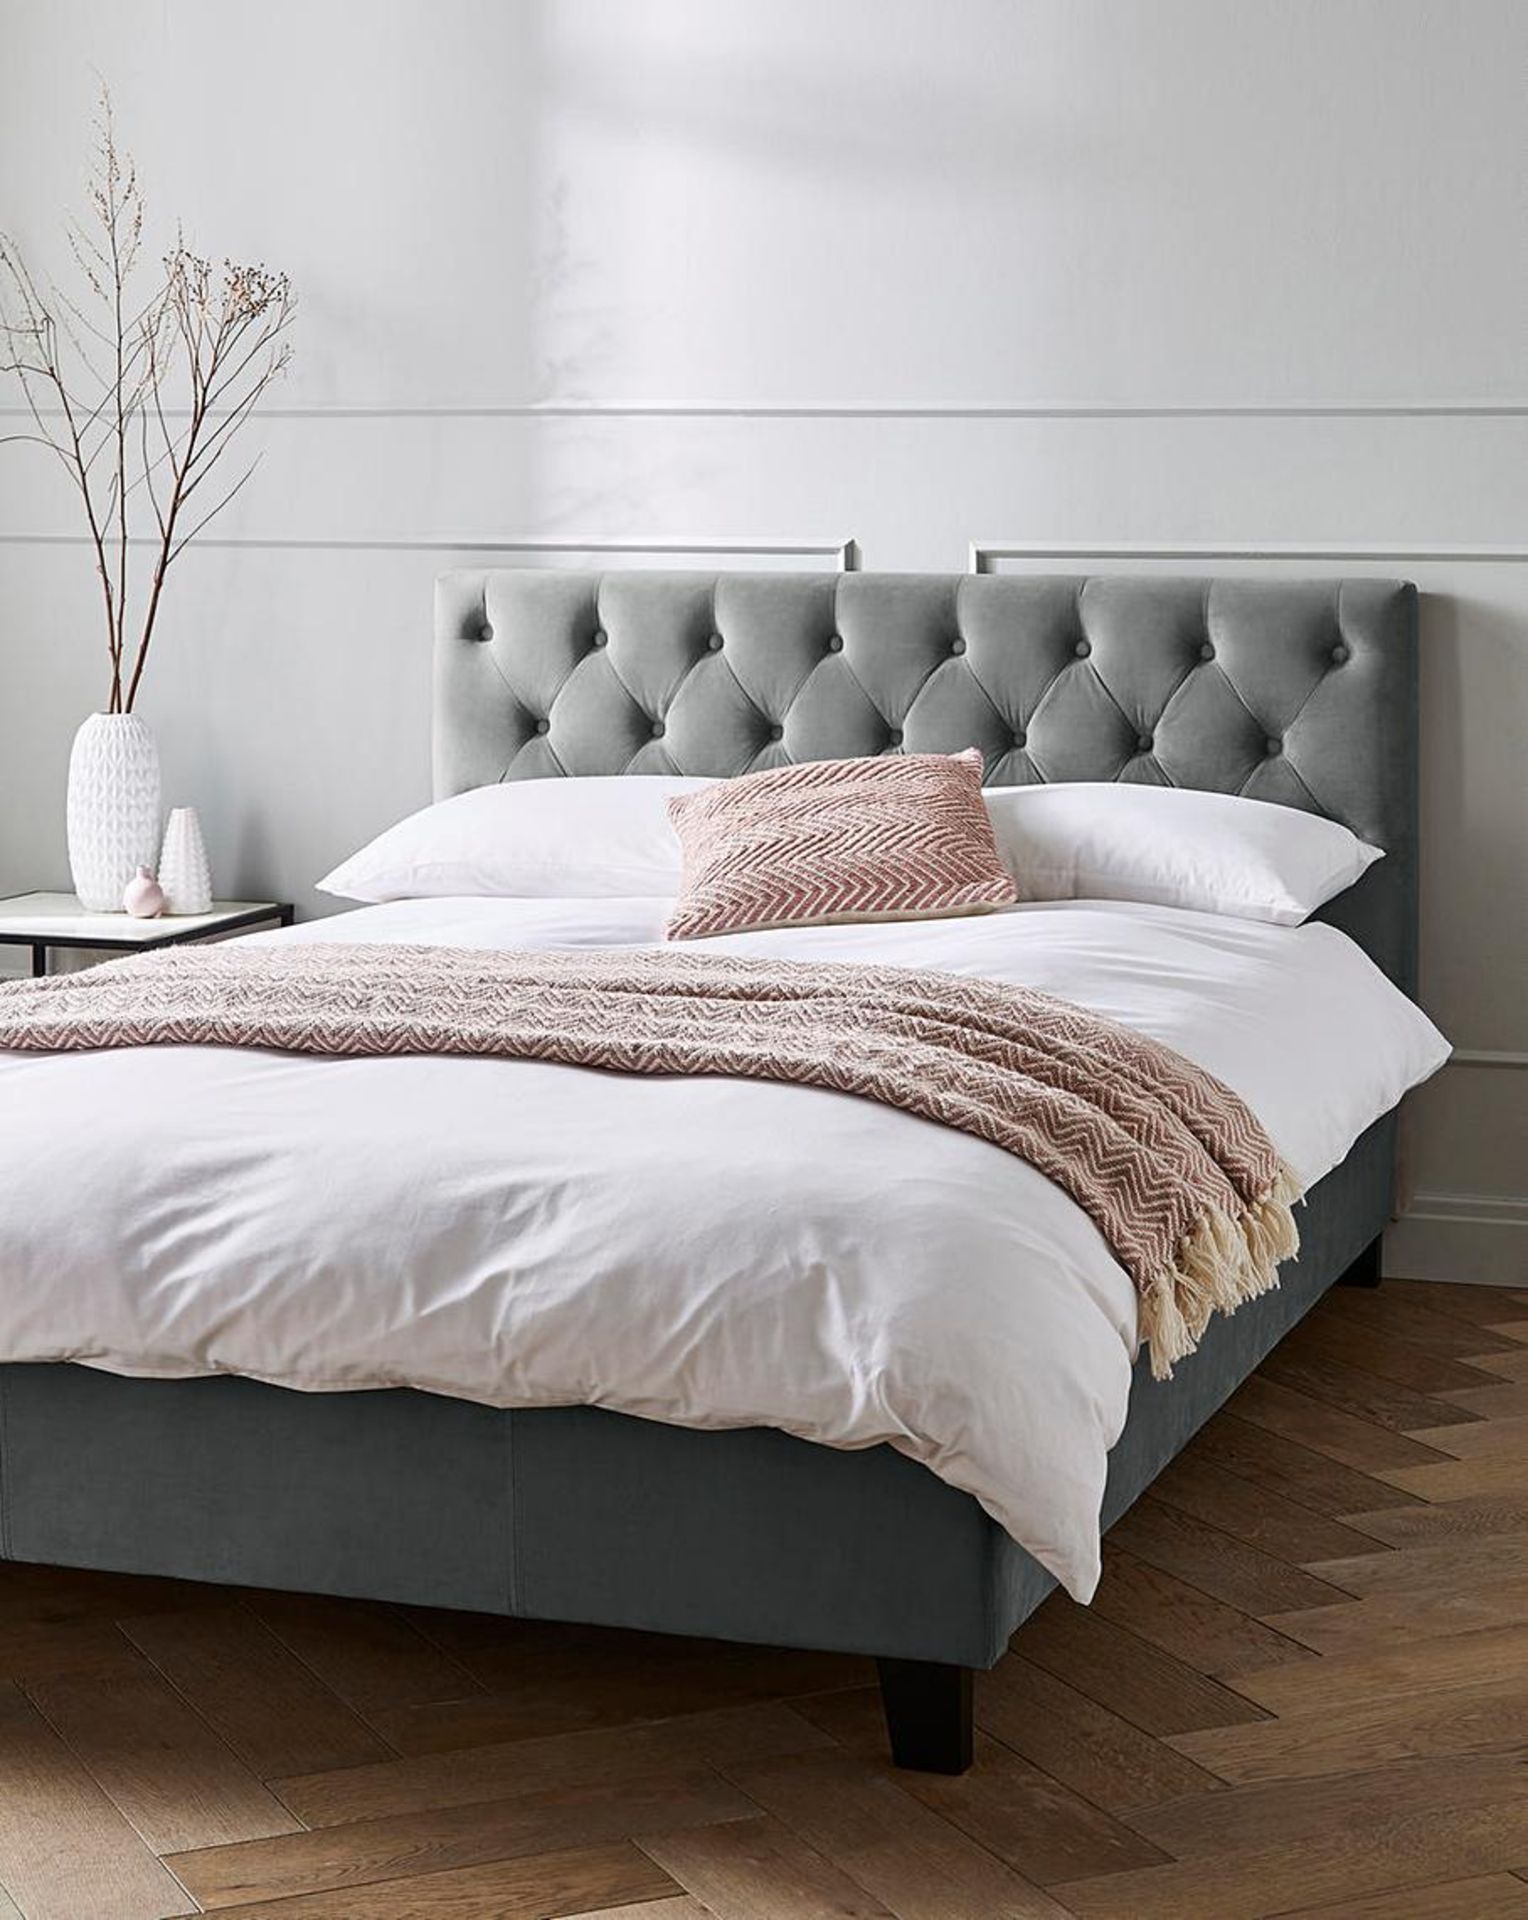 Double Freya Velvet Bed Frame. RRP £545.00. The Freya Velvet Bed Frame has been designed to make a